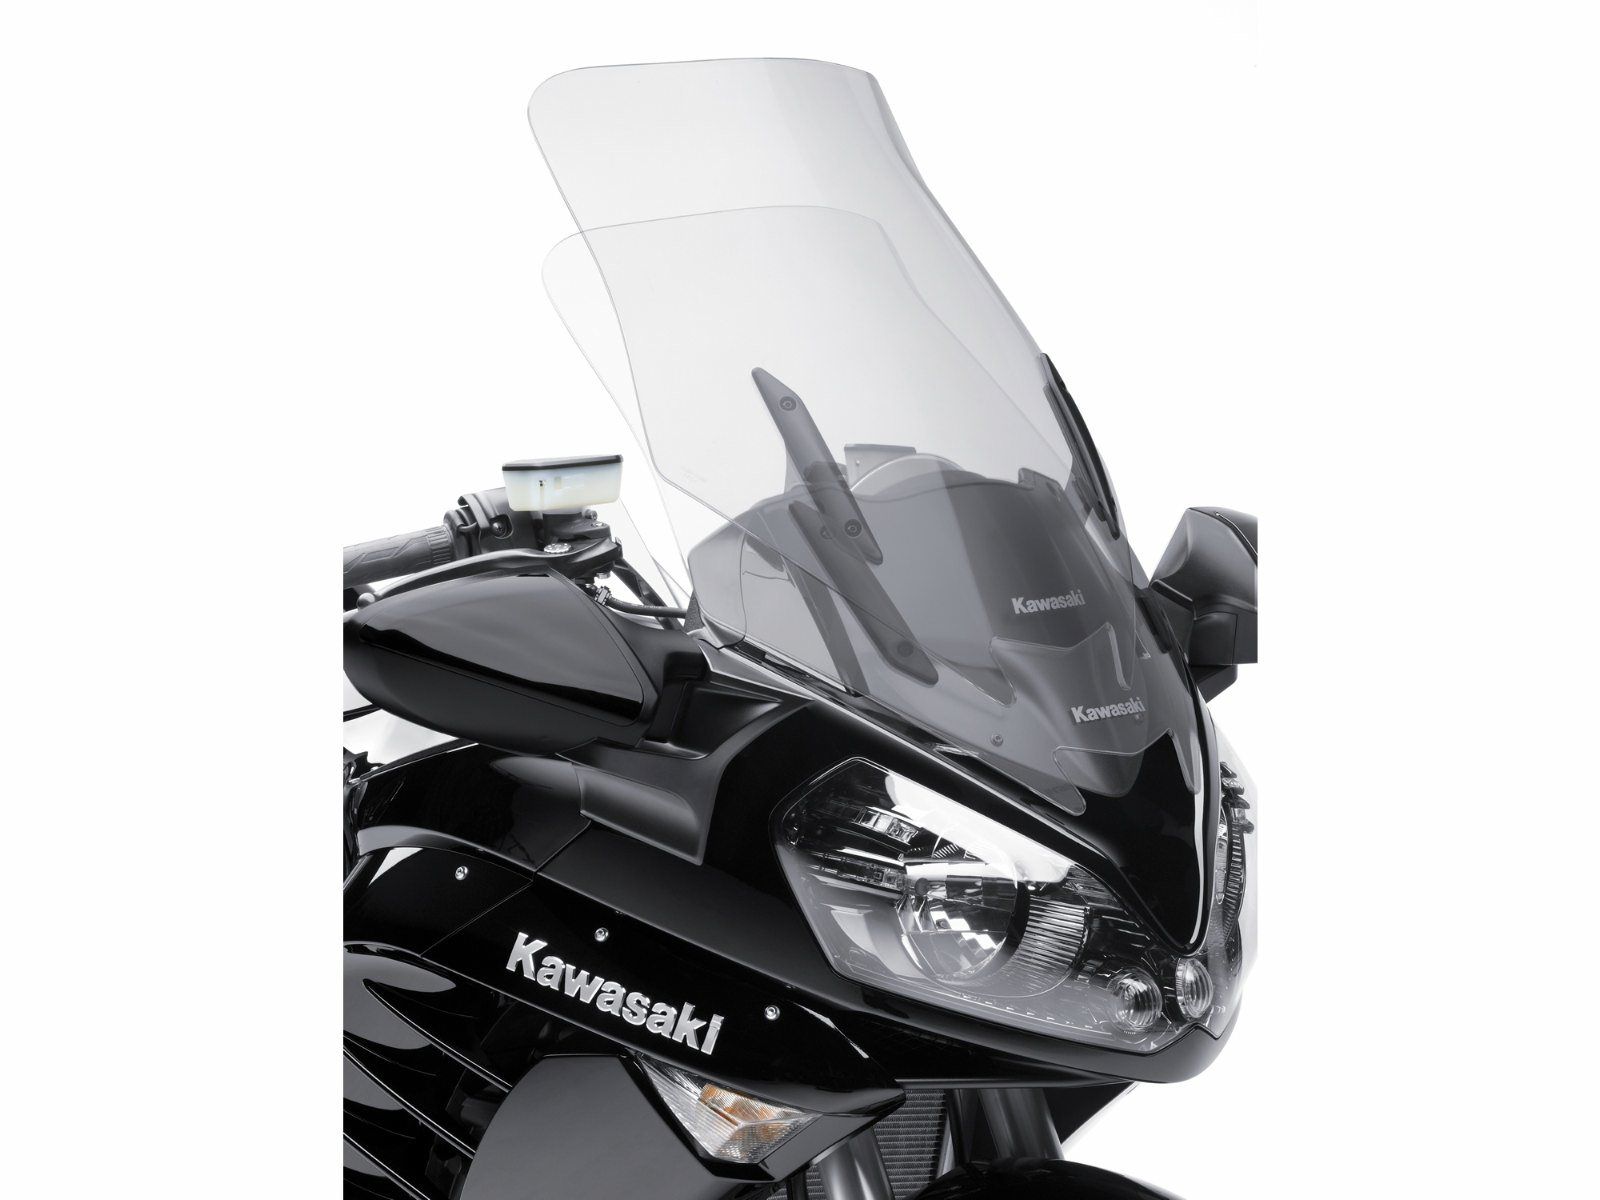 2012 Kawasaki Concours 14 ABS